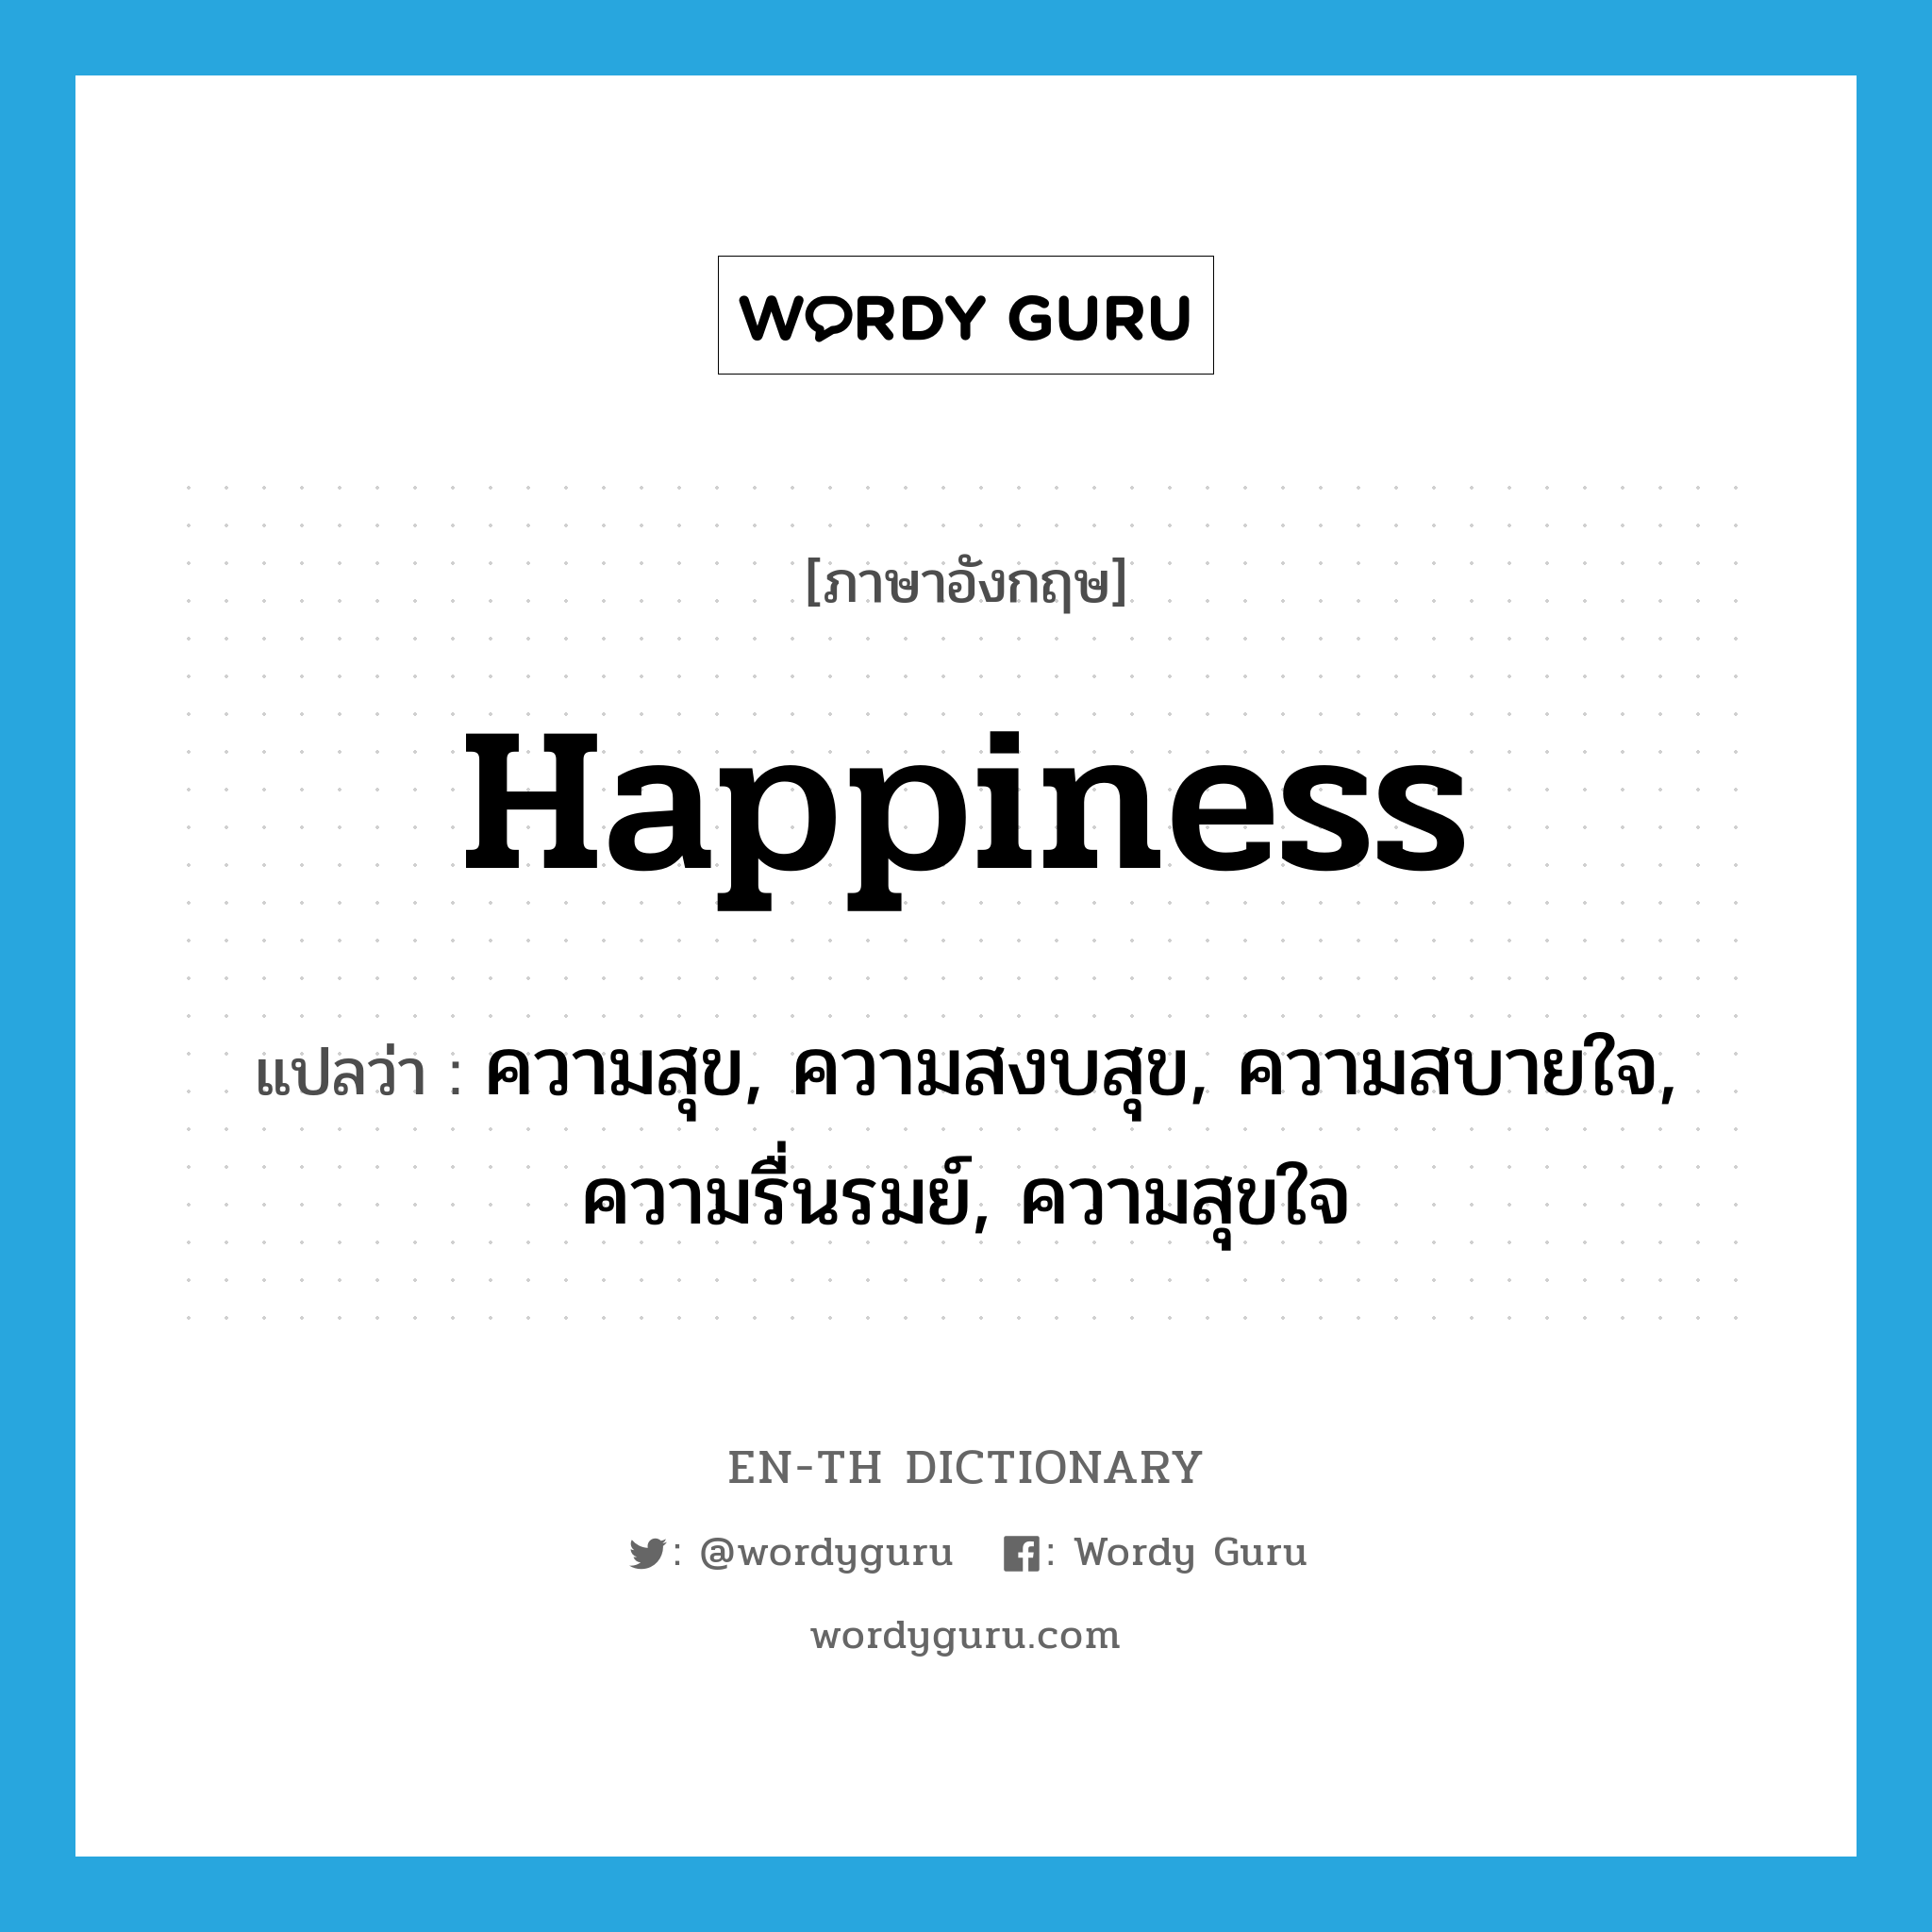 ความสุข, ความสงบสุข, ความสบายใจ, ความรื่นรมย์, ความสุขใจ ภาษาอังกฤษ?, คำศัพท์ภาษาอังกฤษ ความสุข, ความสงบสุข, ความสบายใจ, ความรื่นรมย์, ความสุขใจ แปลว่า happiness ประเภท N หมวด N